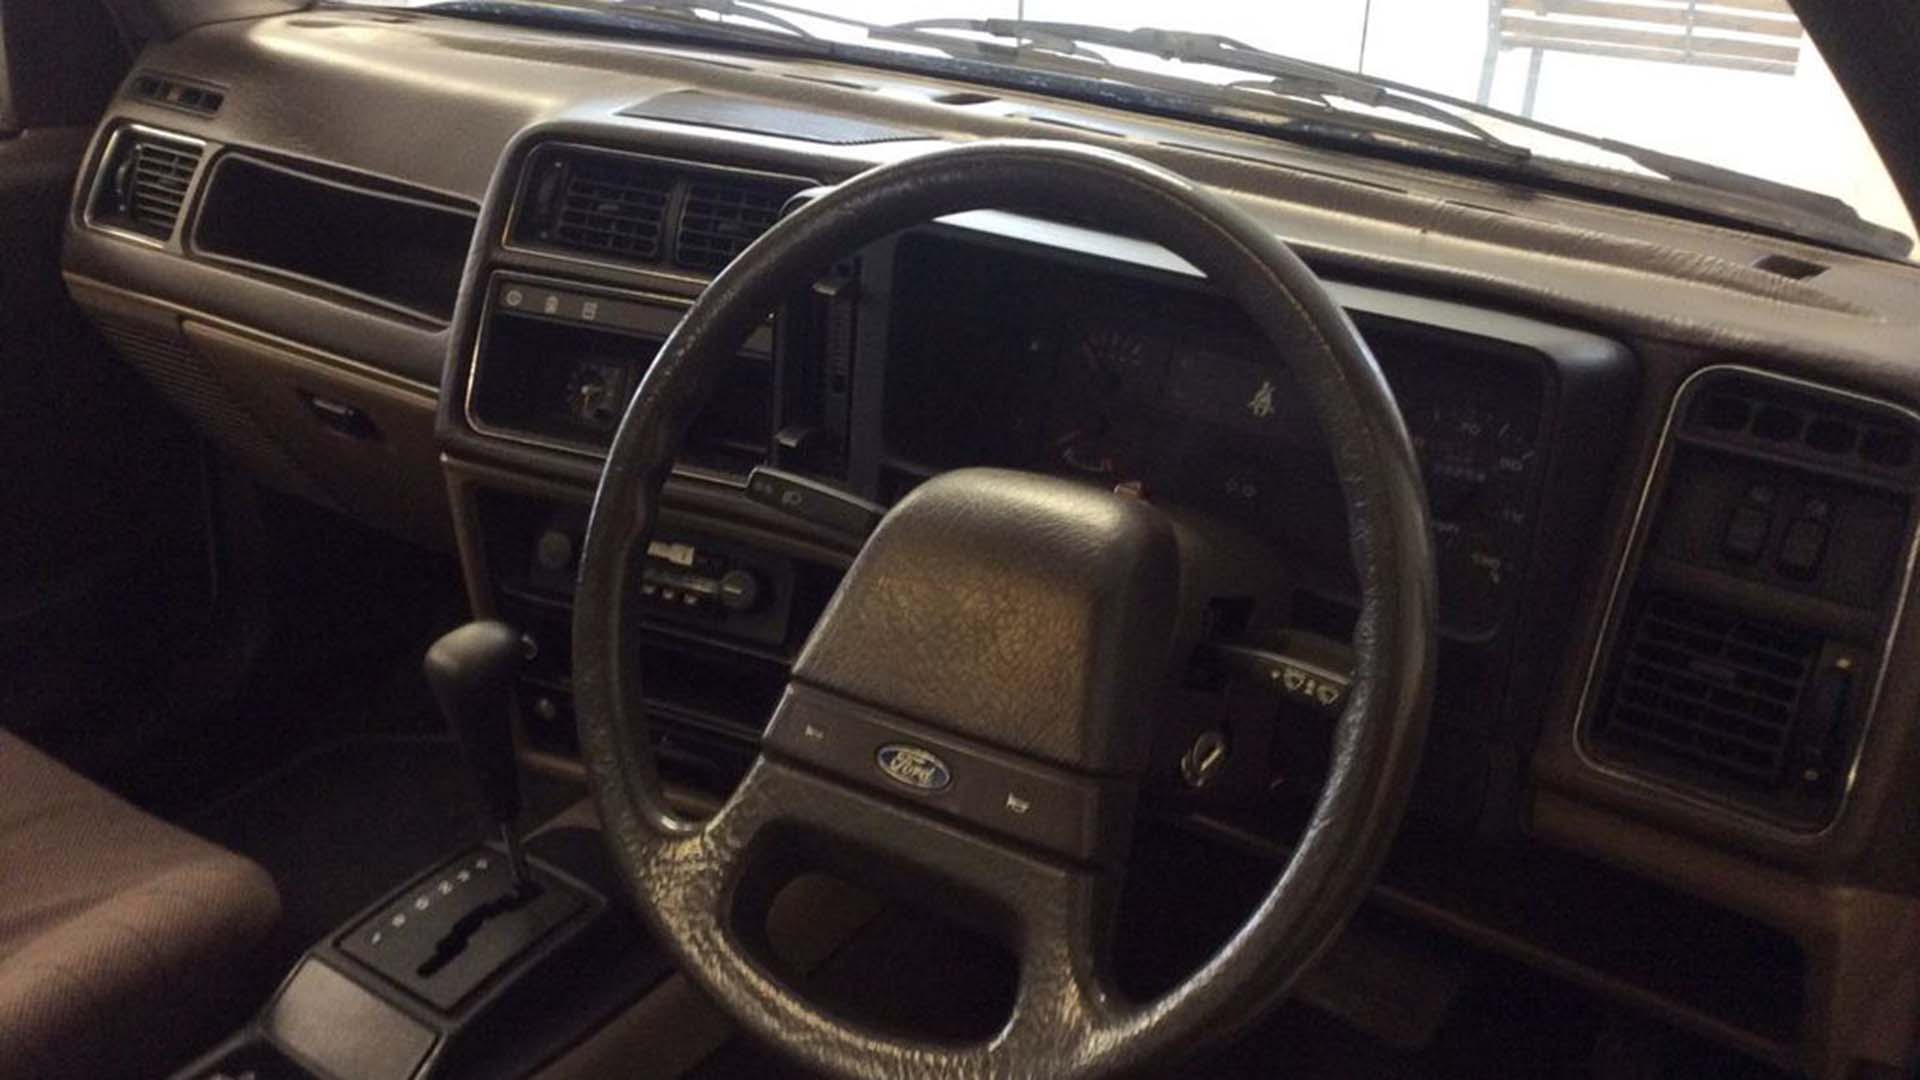 Ford Sierra 2.0 GL interior